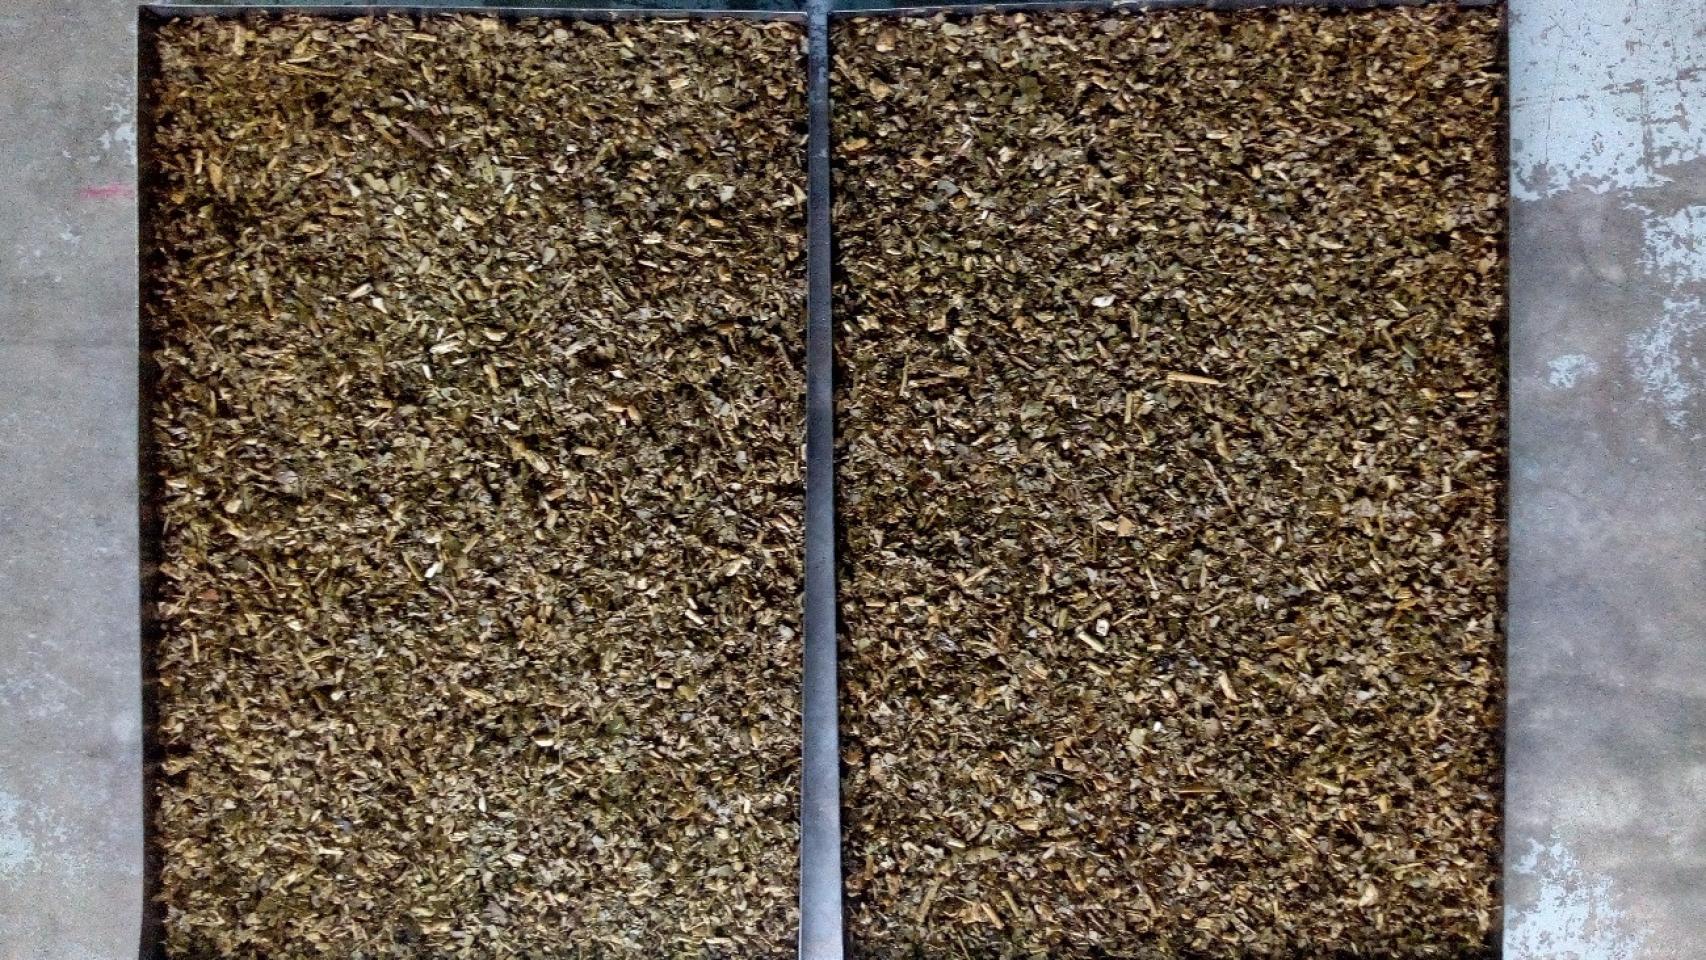 Residuo de la yerba mate en dos bandejas, durante la primera fase en el laboratorio.